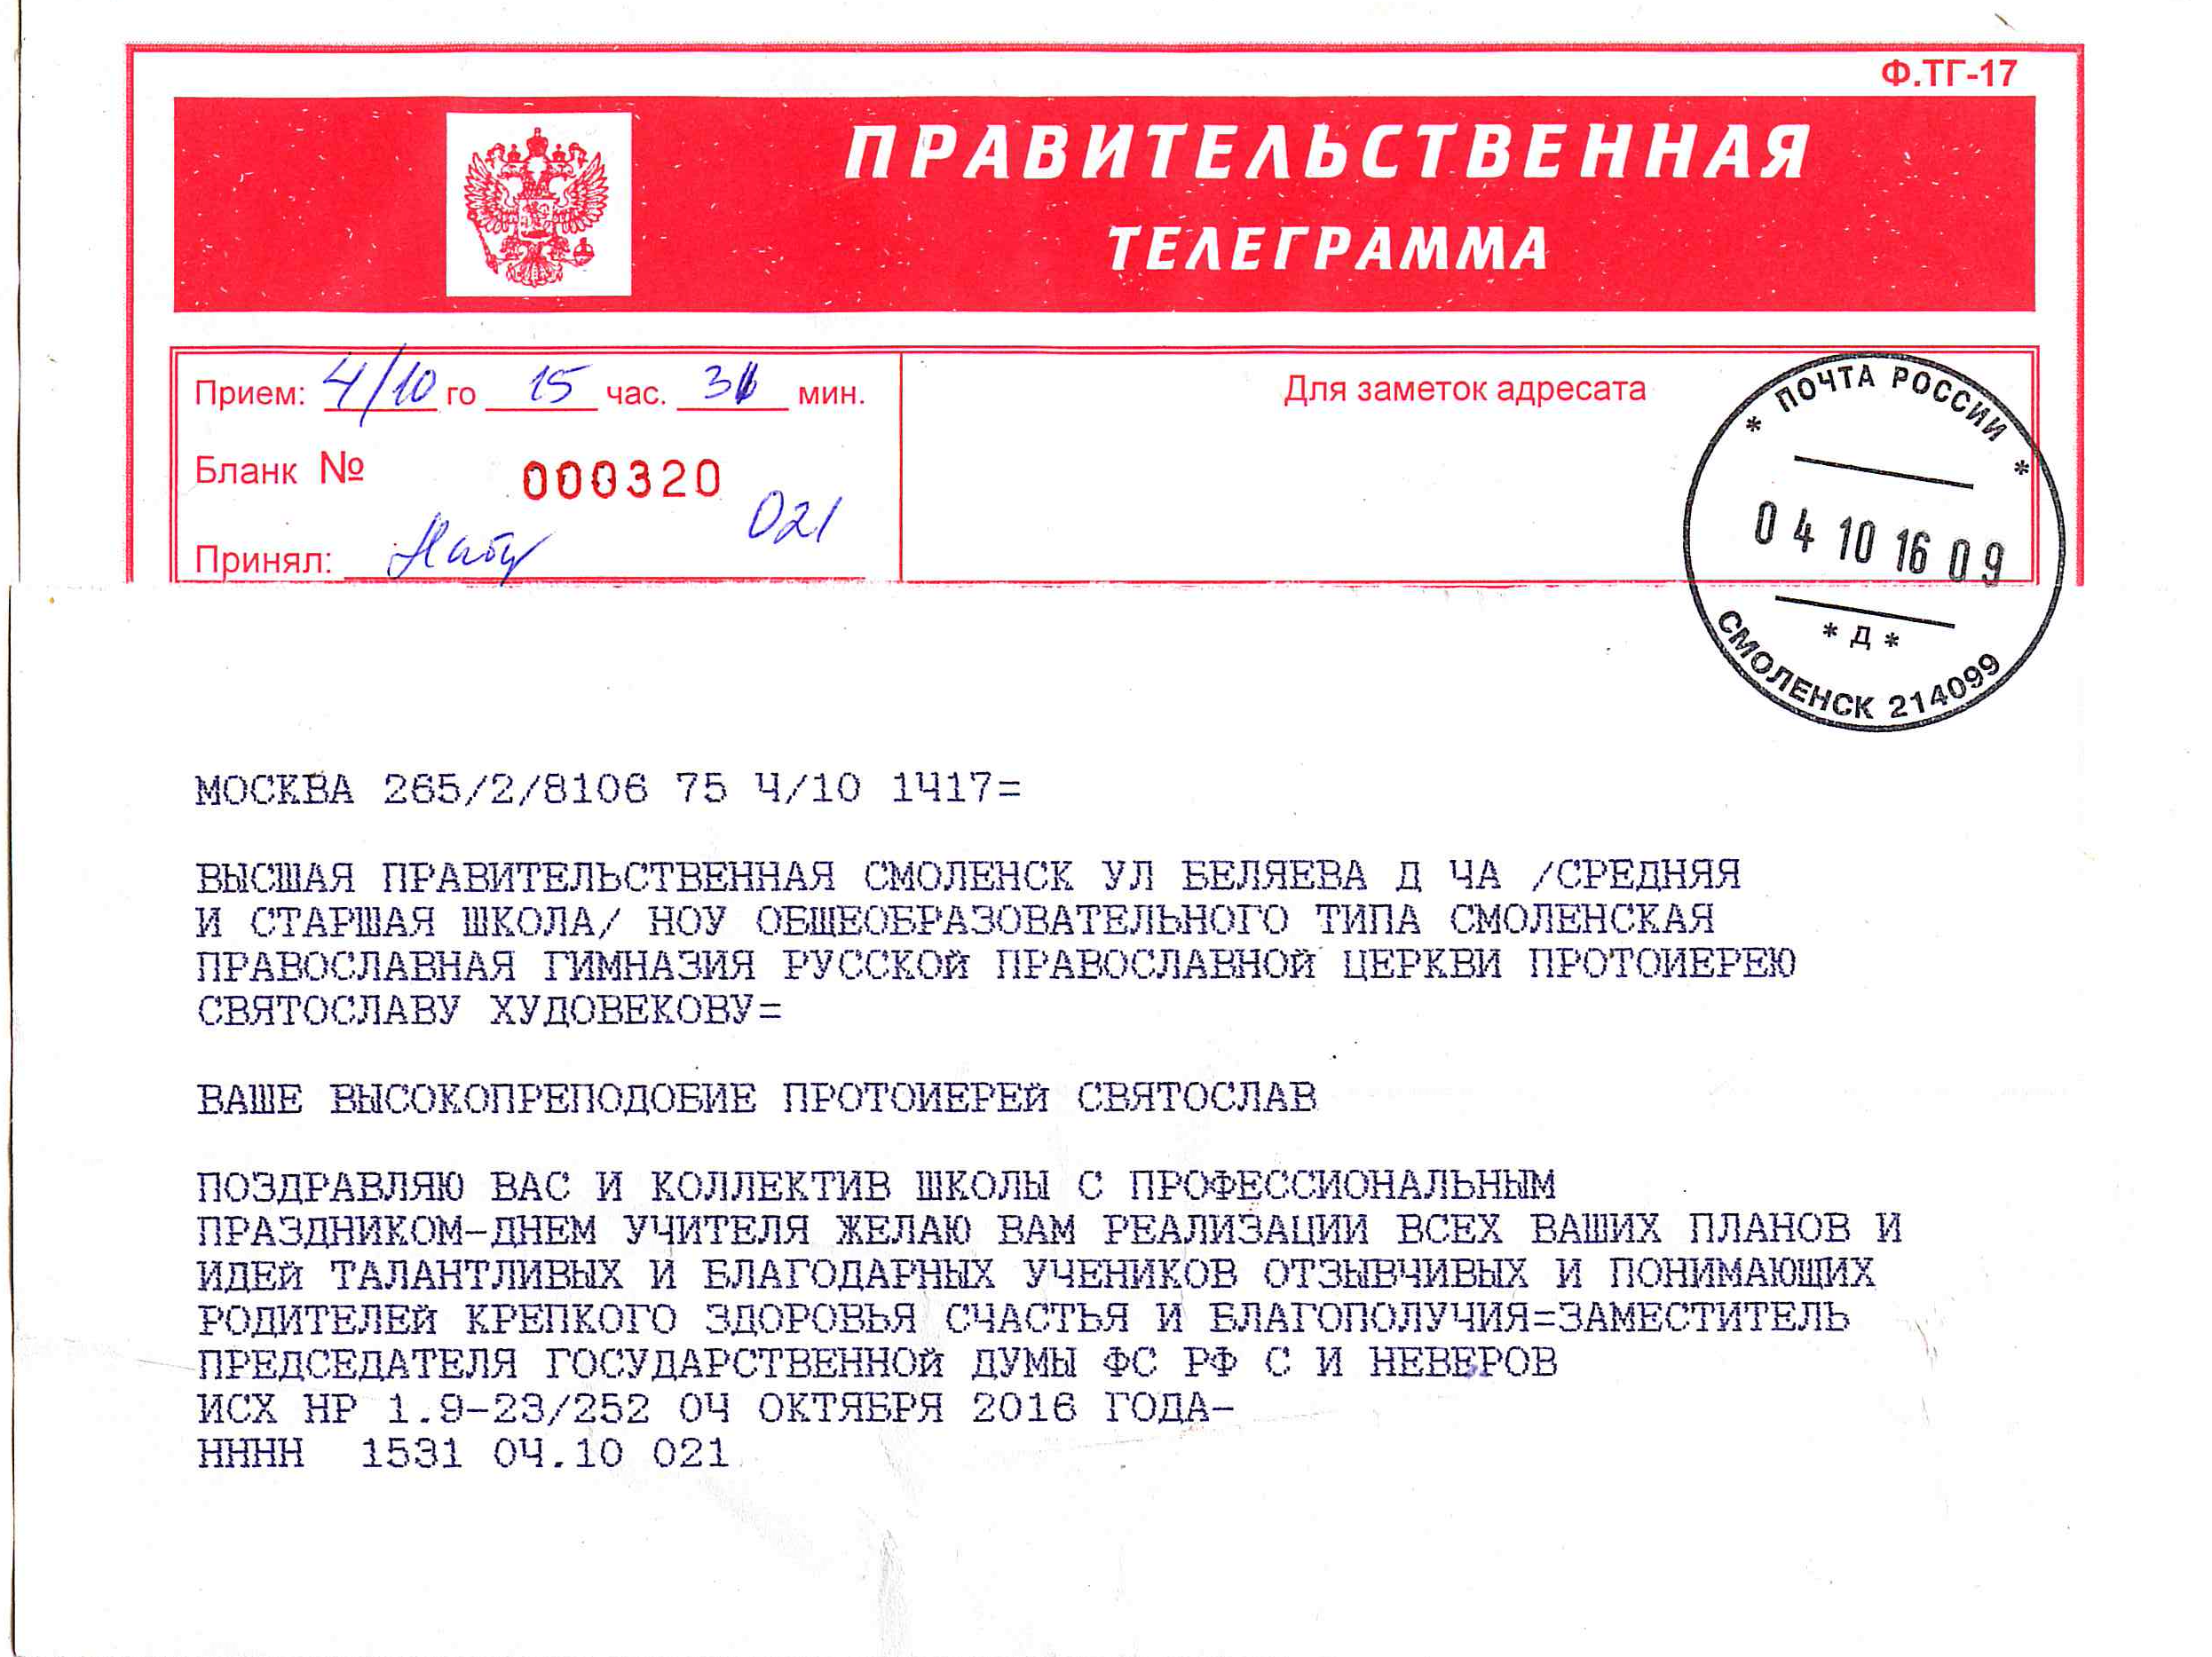 Как пишется телеграмма на русском языке фото 119